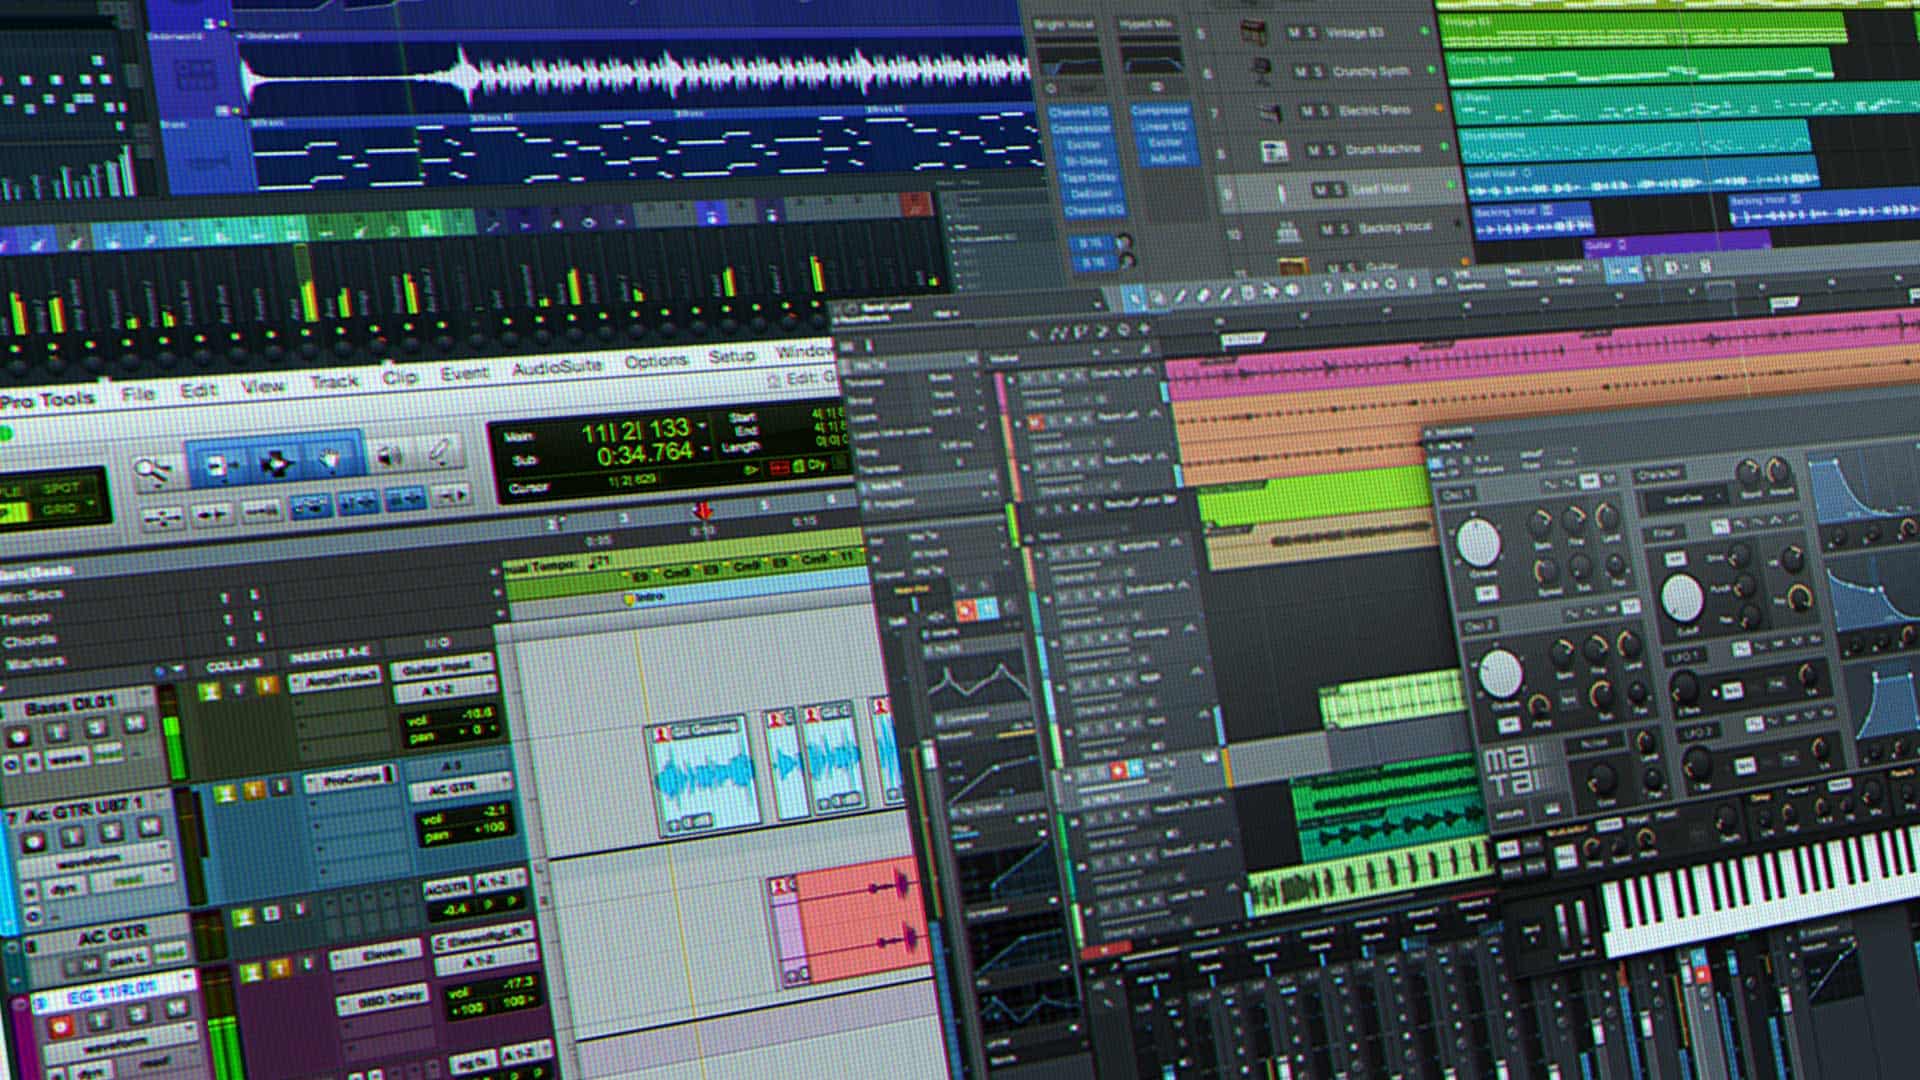 bejdsemiddel antydning Stolt The 5 Best Softwares for Making Beats